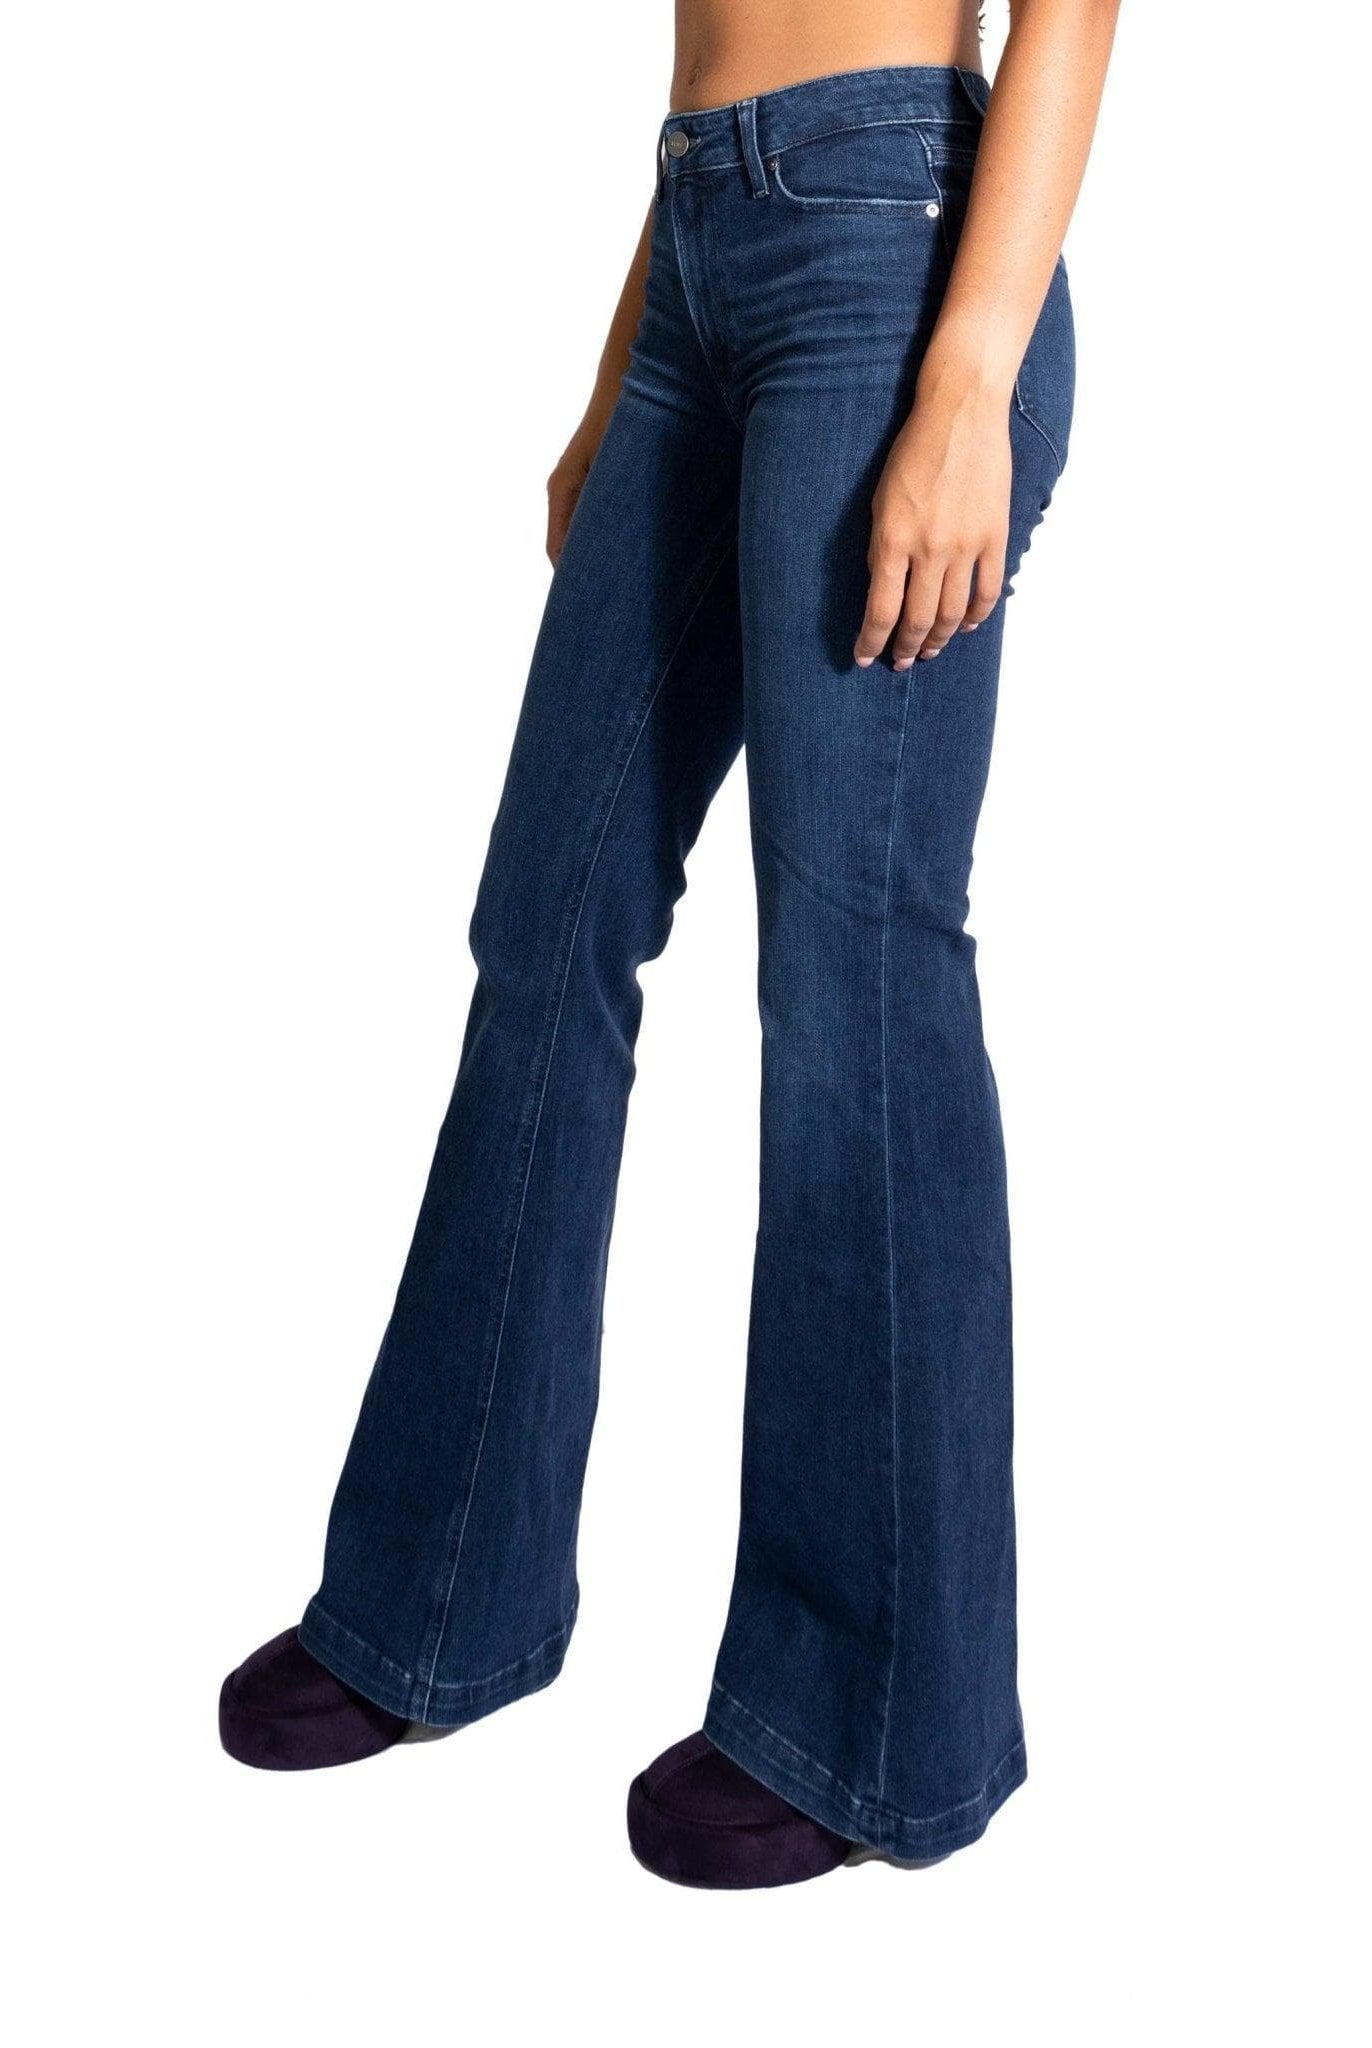 Jeans Geneive modern- Paige -Giorgioquinto